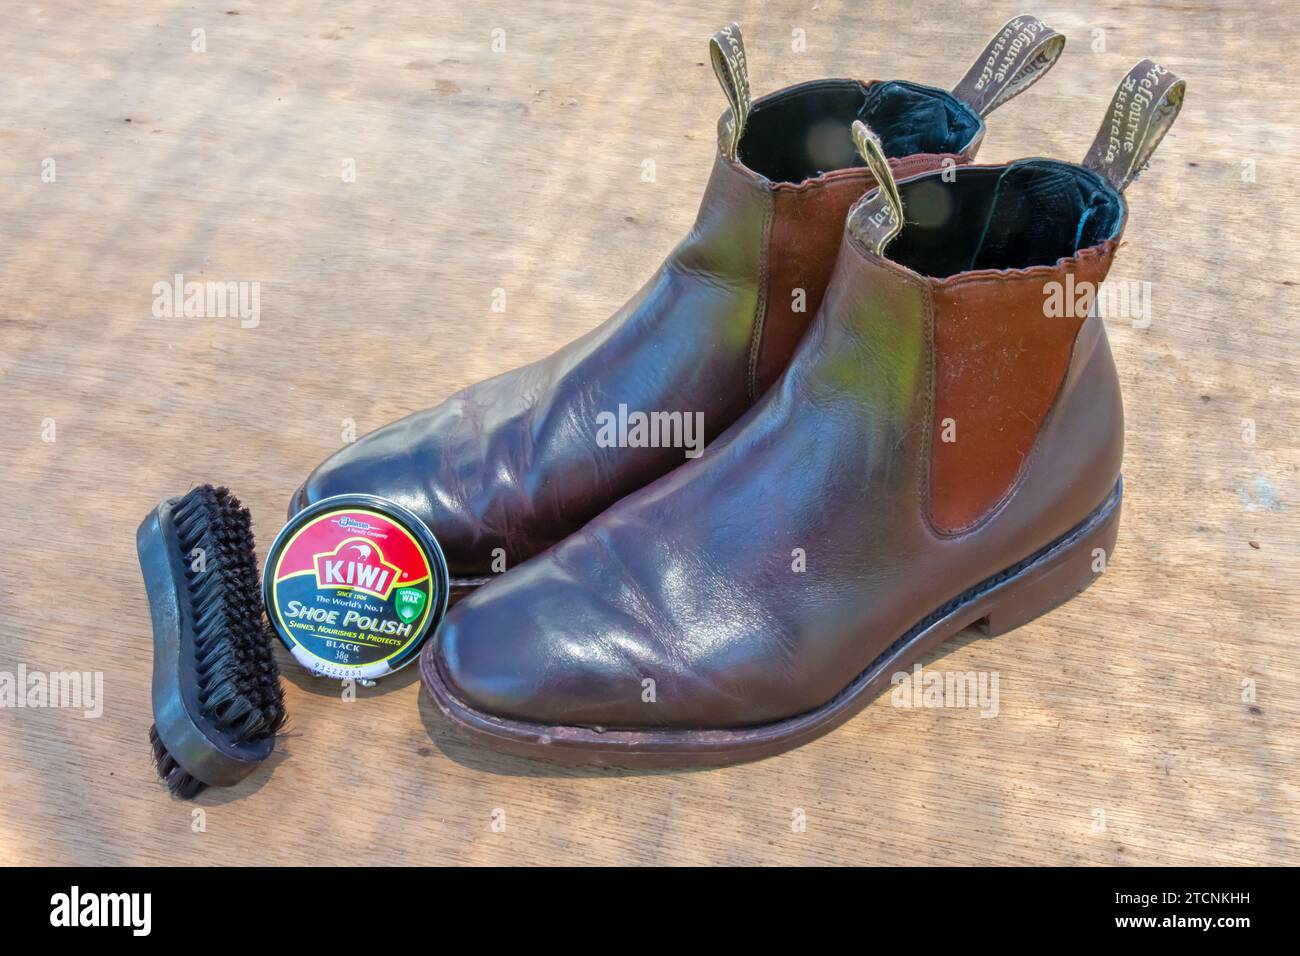 Scarpa, spazzola e stivali Kiwi di S C Johnson Foto Stock